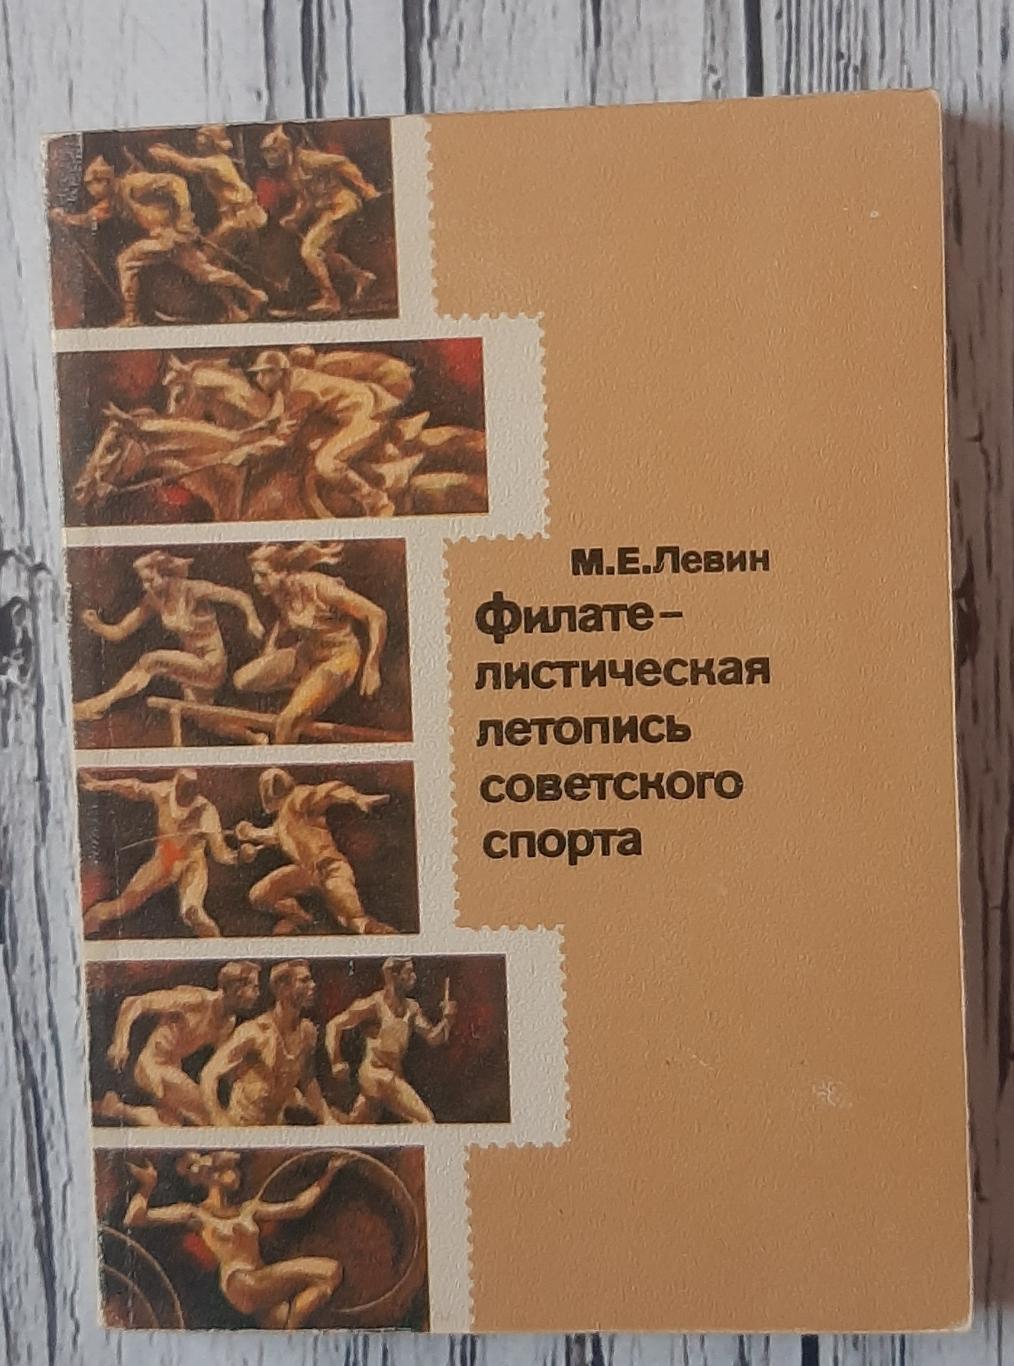 Левин - Филателистическая летопись советского спорта /1979/